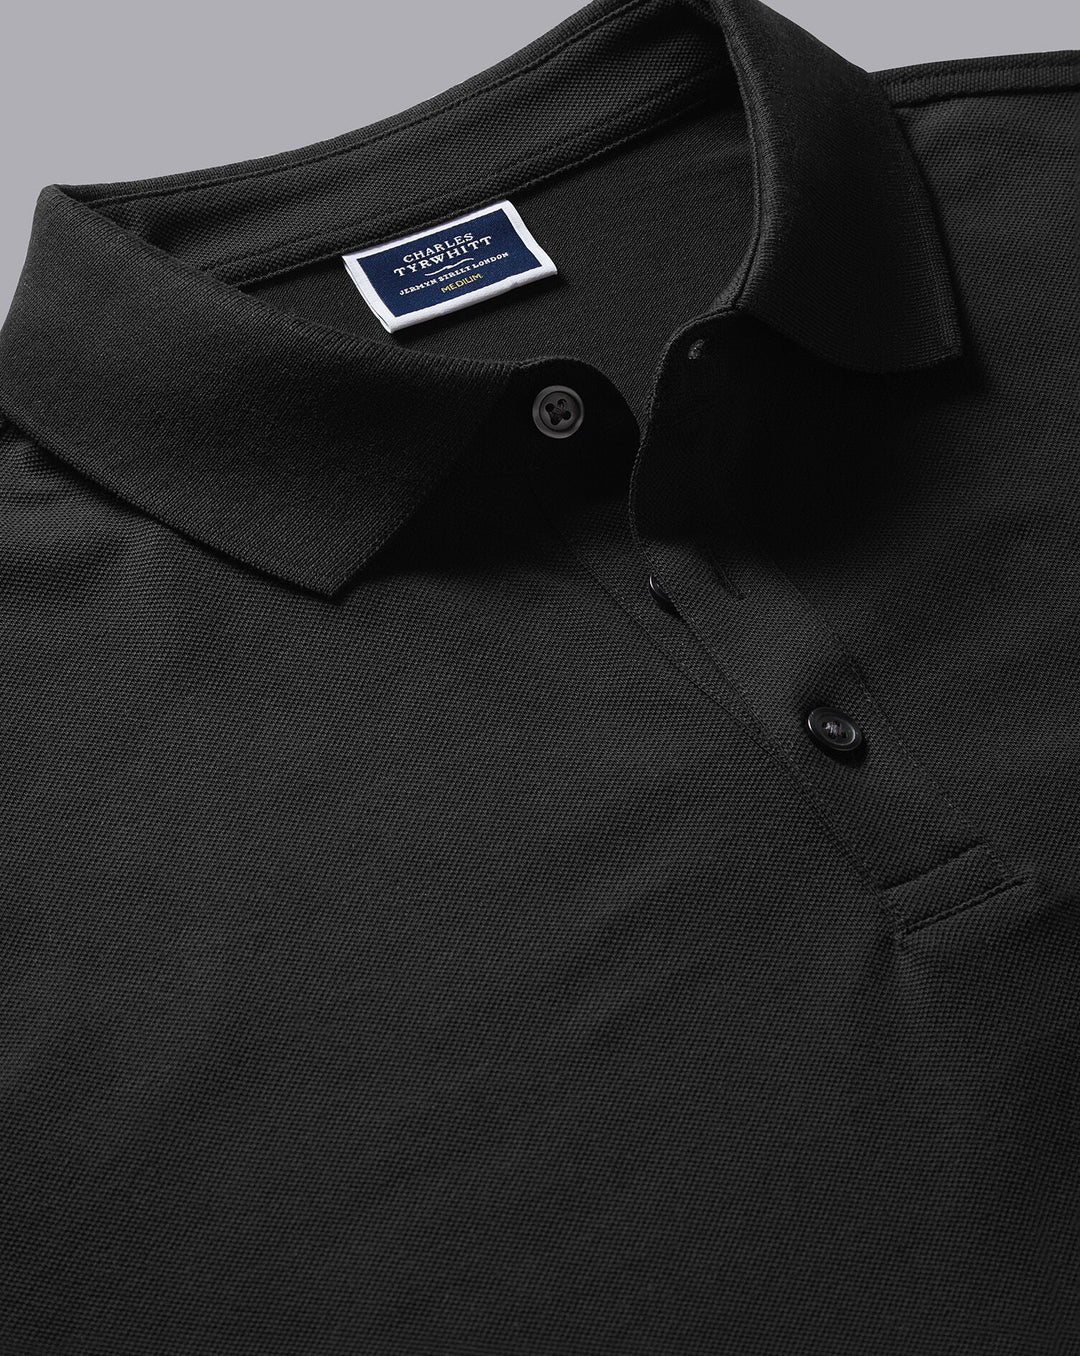 Charles Tyrwhitt Black Solid Short Sleeve Cotton Tyrwhitt Pique Polo